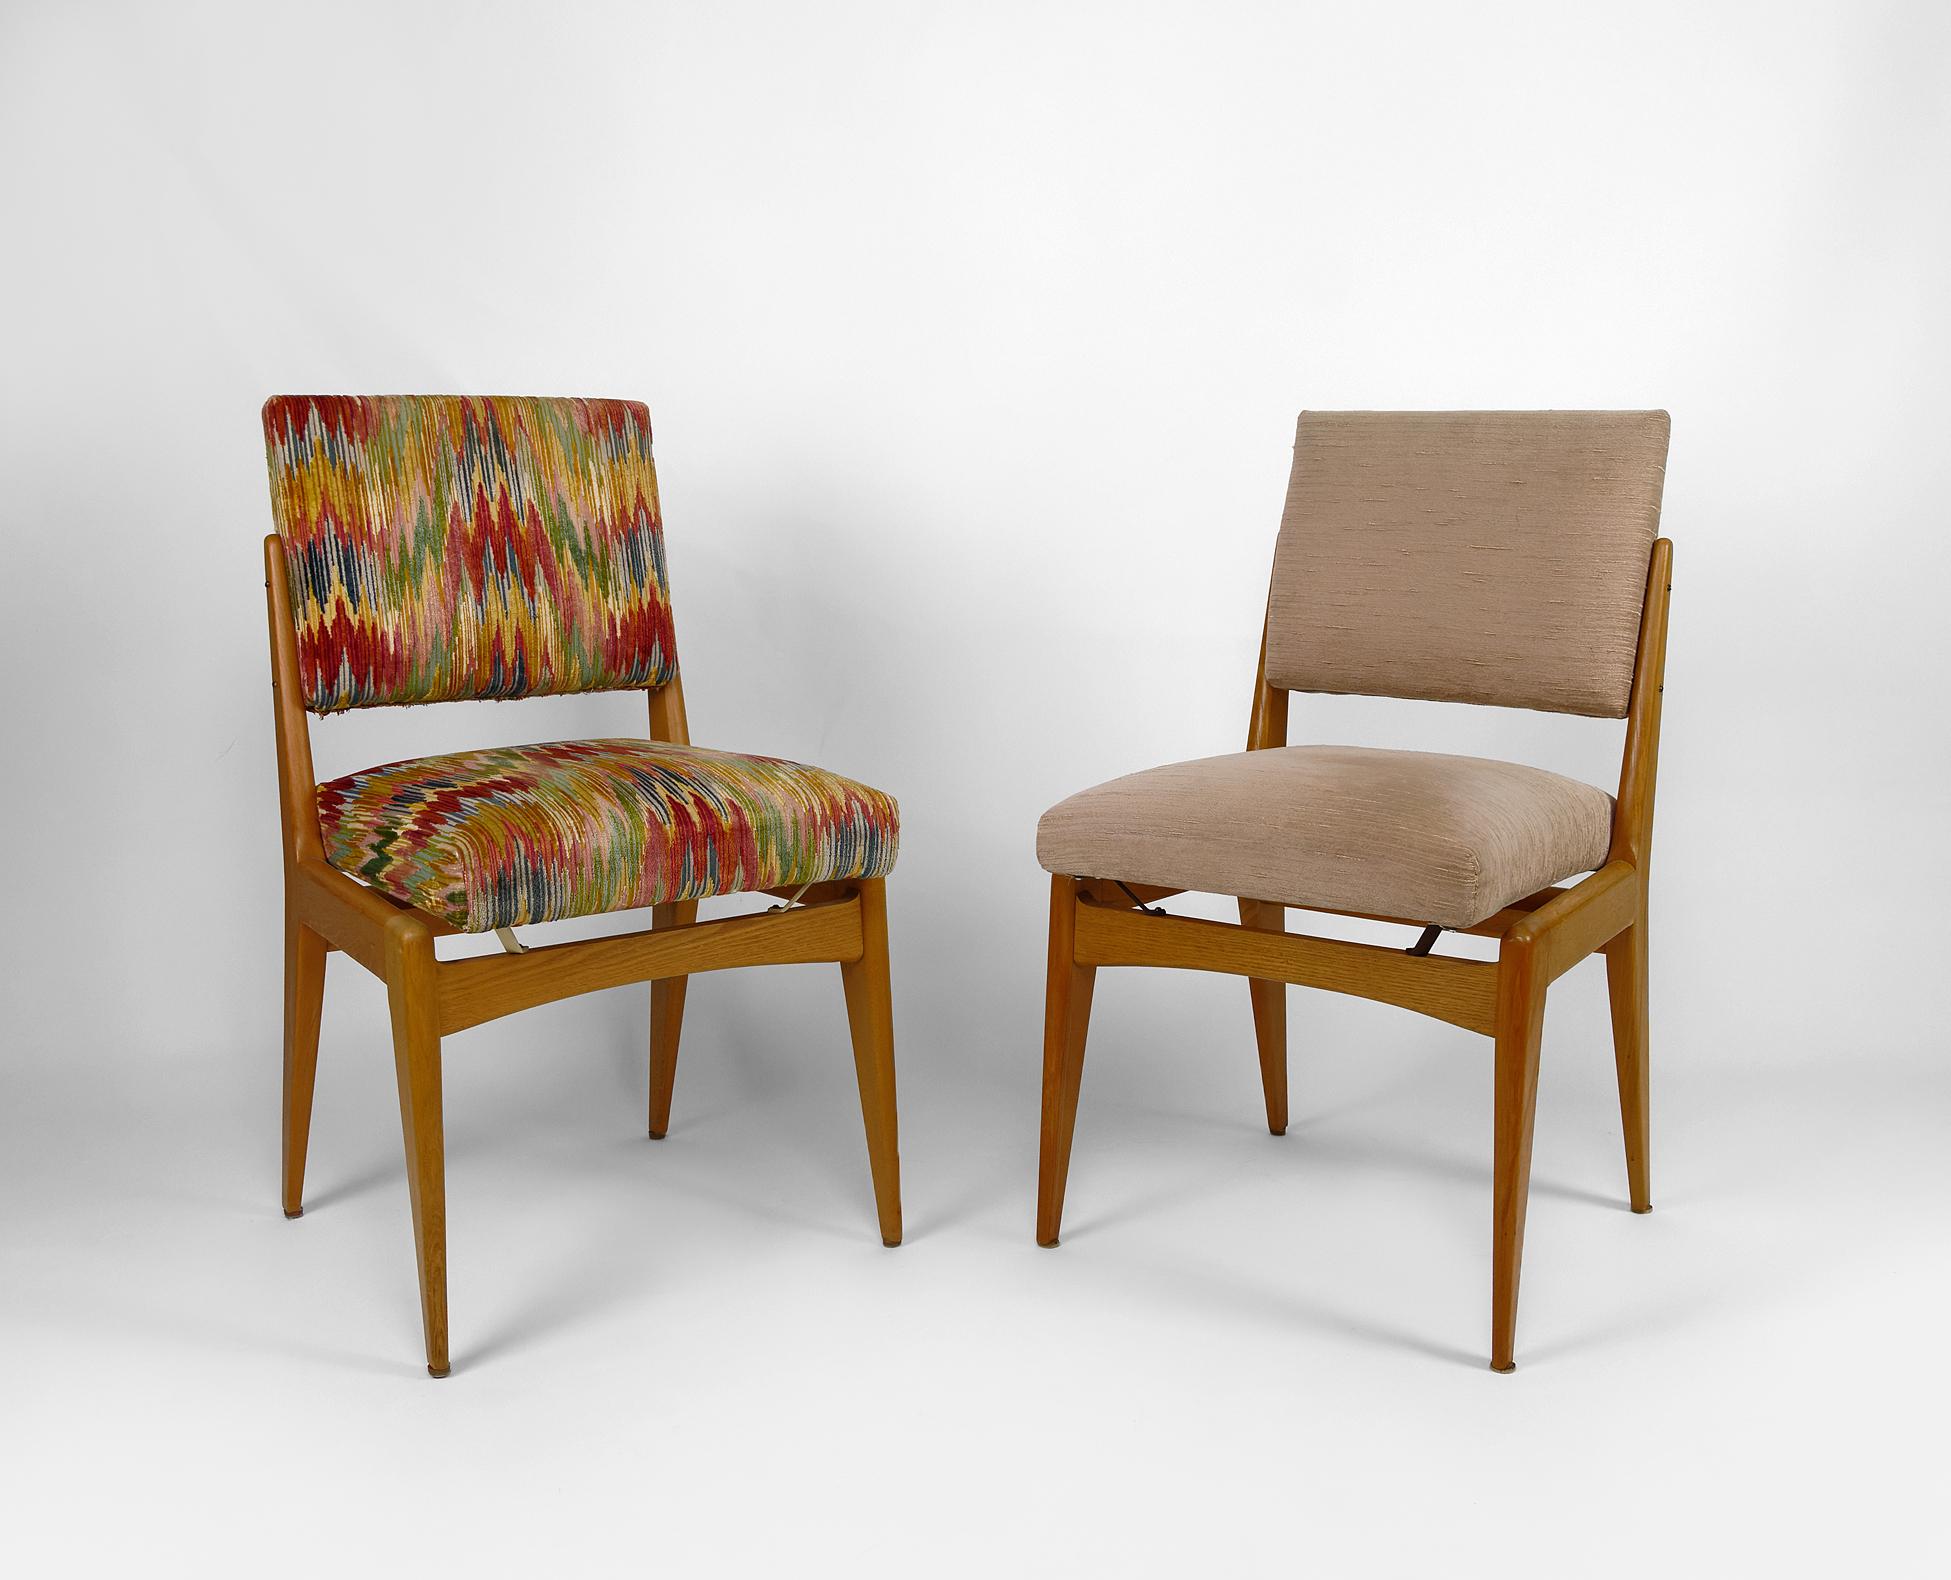 Jolie paire de chaises vintage dépareillées : l'une a un tissu gris / taupe / beige chiné, et l'autre un tissu rayé multicolore.

Structure en bois (hêtre), pieds à compas.

Style moderne / scandinave, France, vers 1950-1960.
Dans le style de